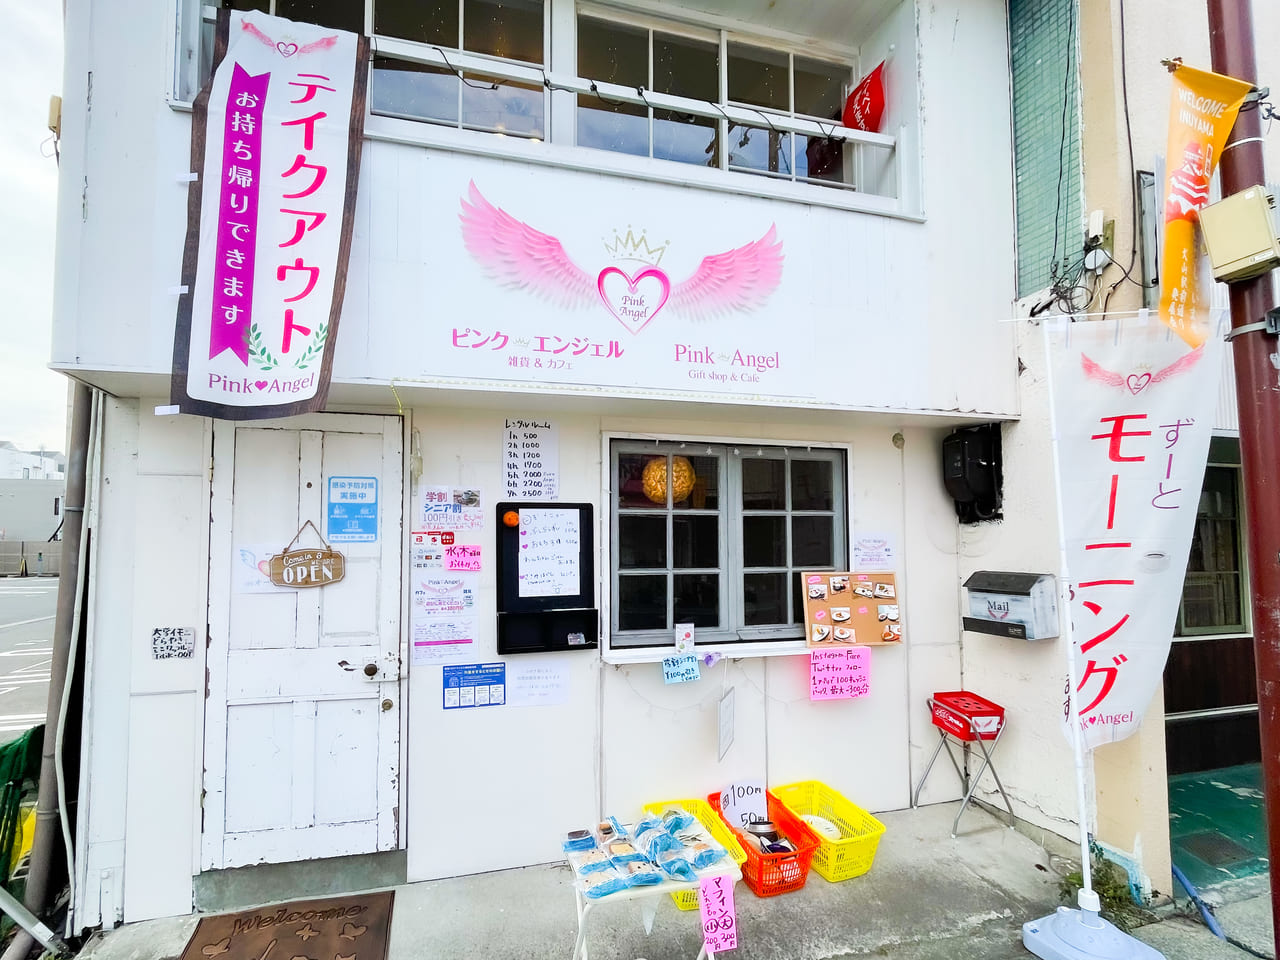 犬山市 ワンちゃん連れok カフェ 雑貨のお店 Pink Angel がオープンしていました 号外net 小牧市 犬山市